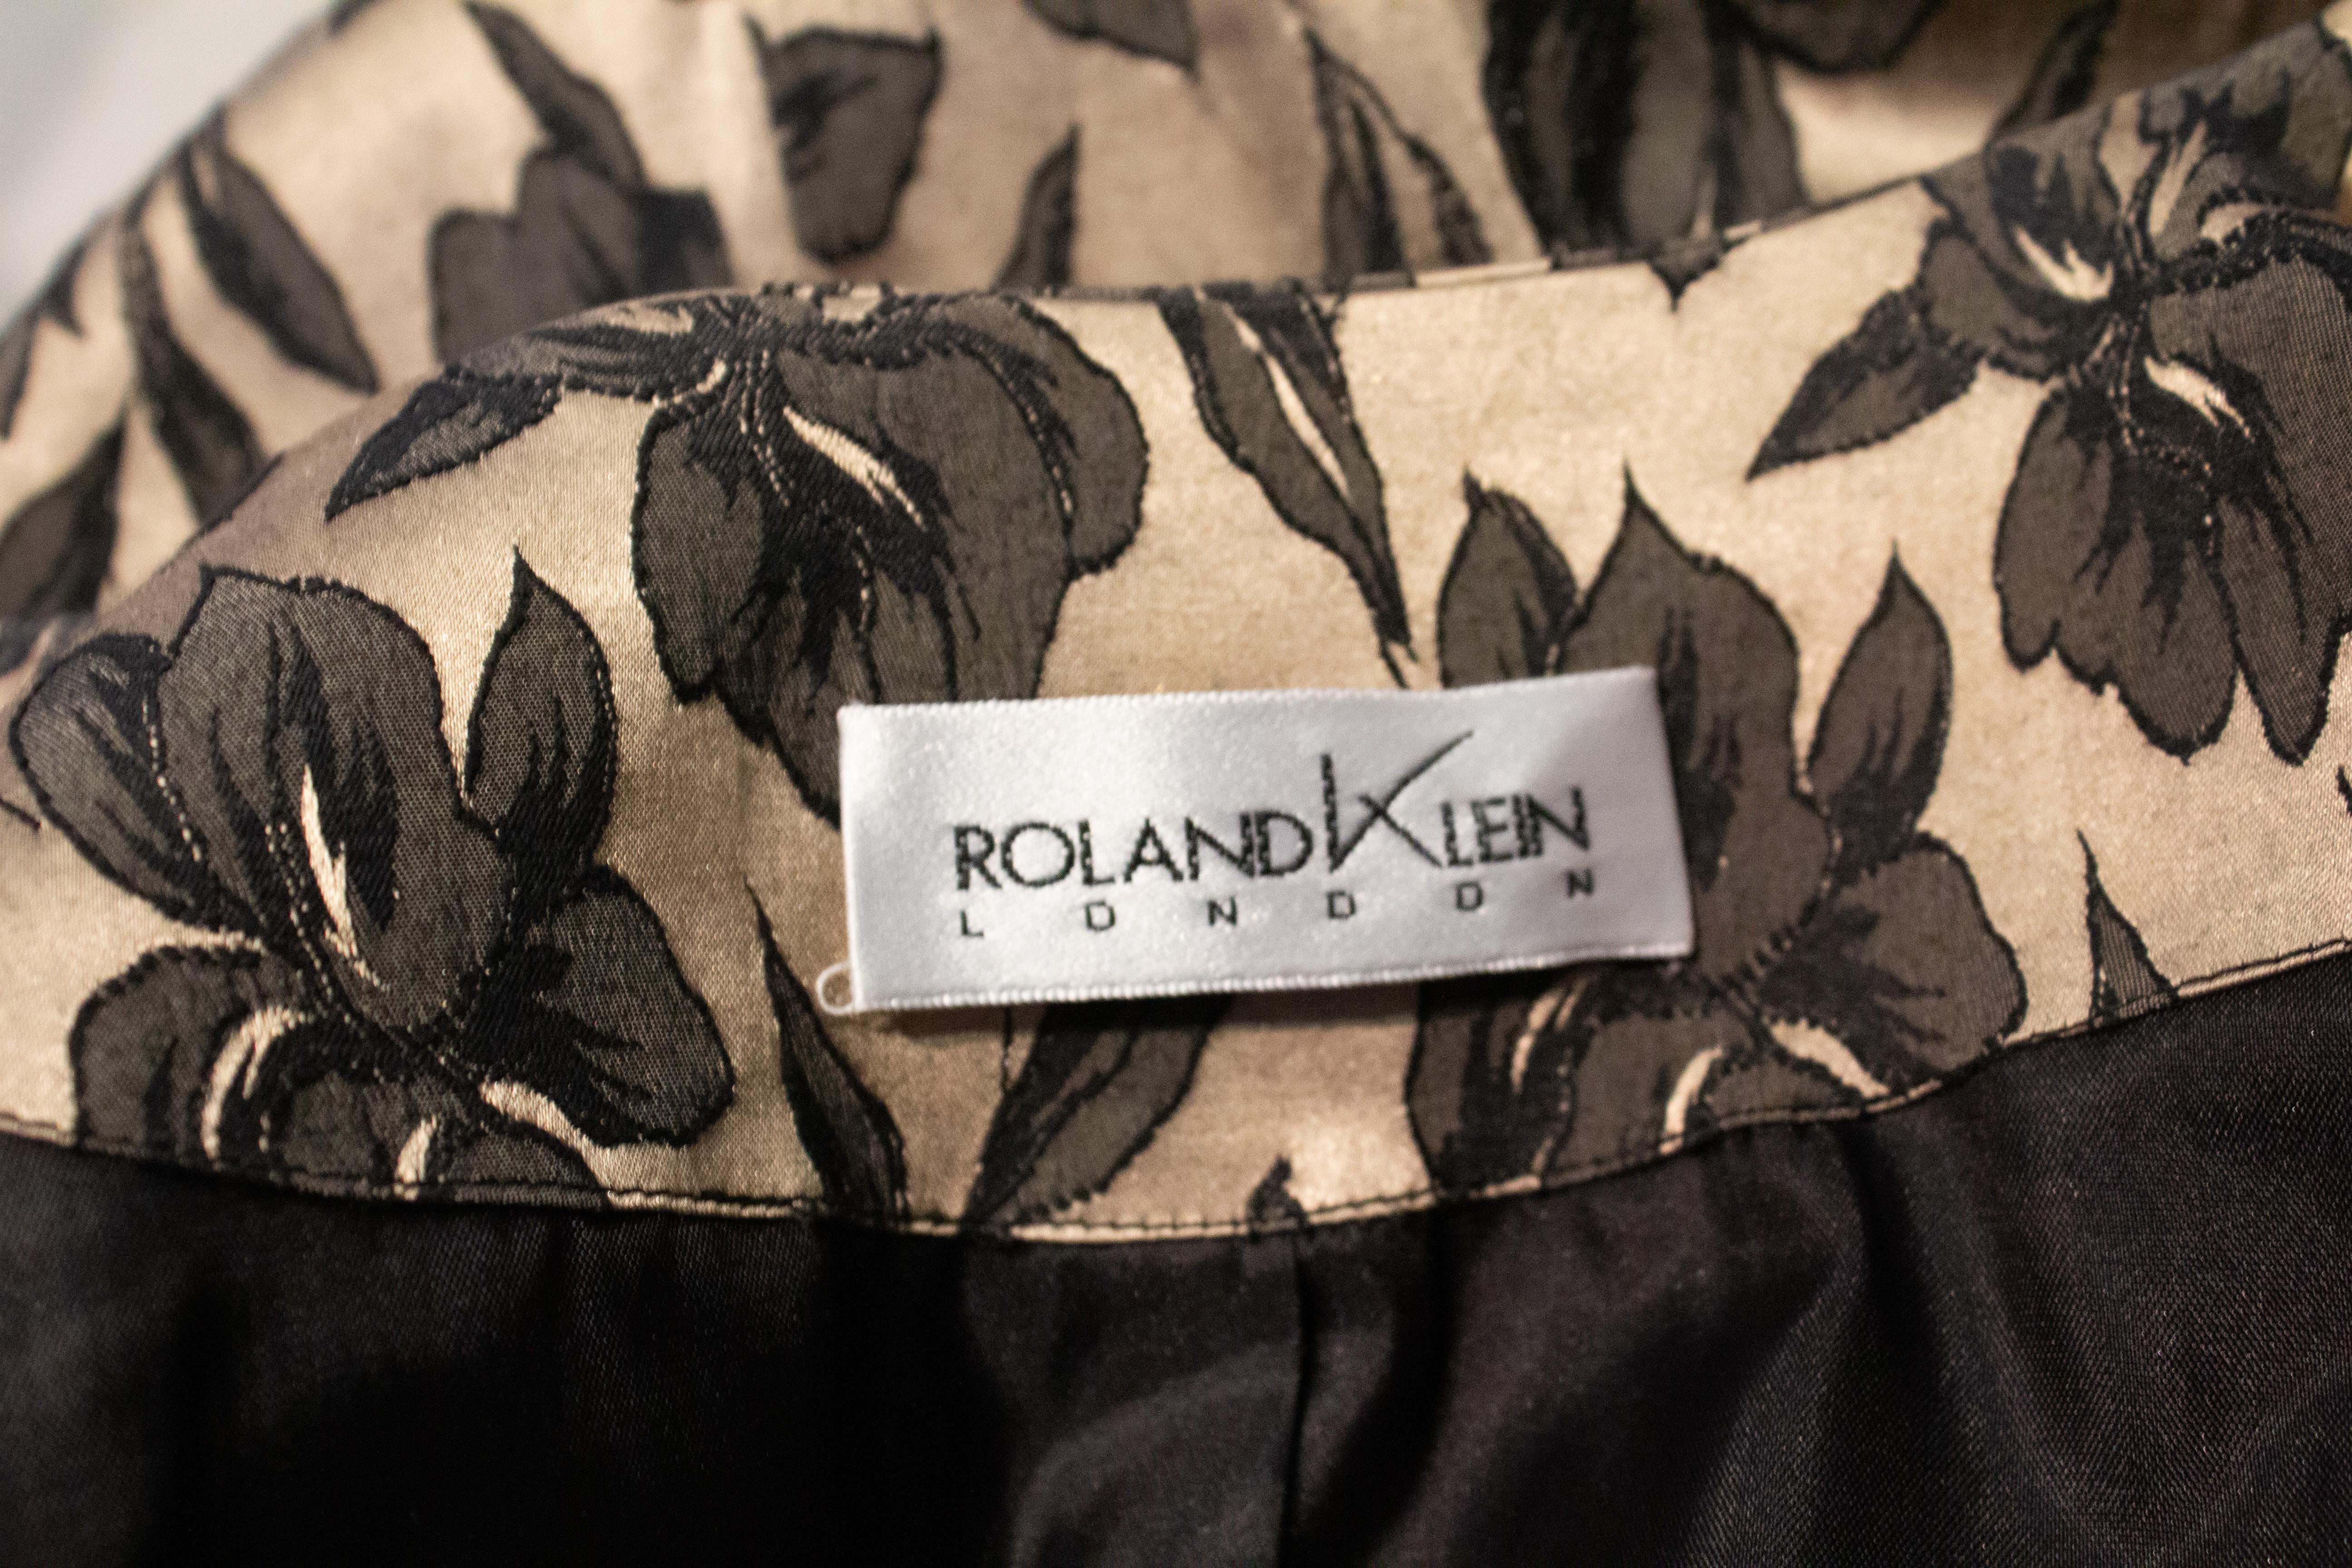 Ein schicker Vintage-Abendmantel von Roland Klein. Der Mantel ist in einem zarten Goldton gehalten und mit einem schwarzen Blattmuster versehen. Es hat einen Rundhalsausschnitt, ellenbogenlange Ärmel und eine Tasche auf jeder Seite.
Markiert eine